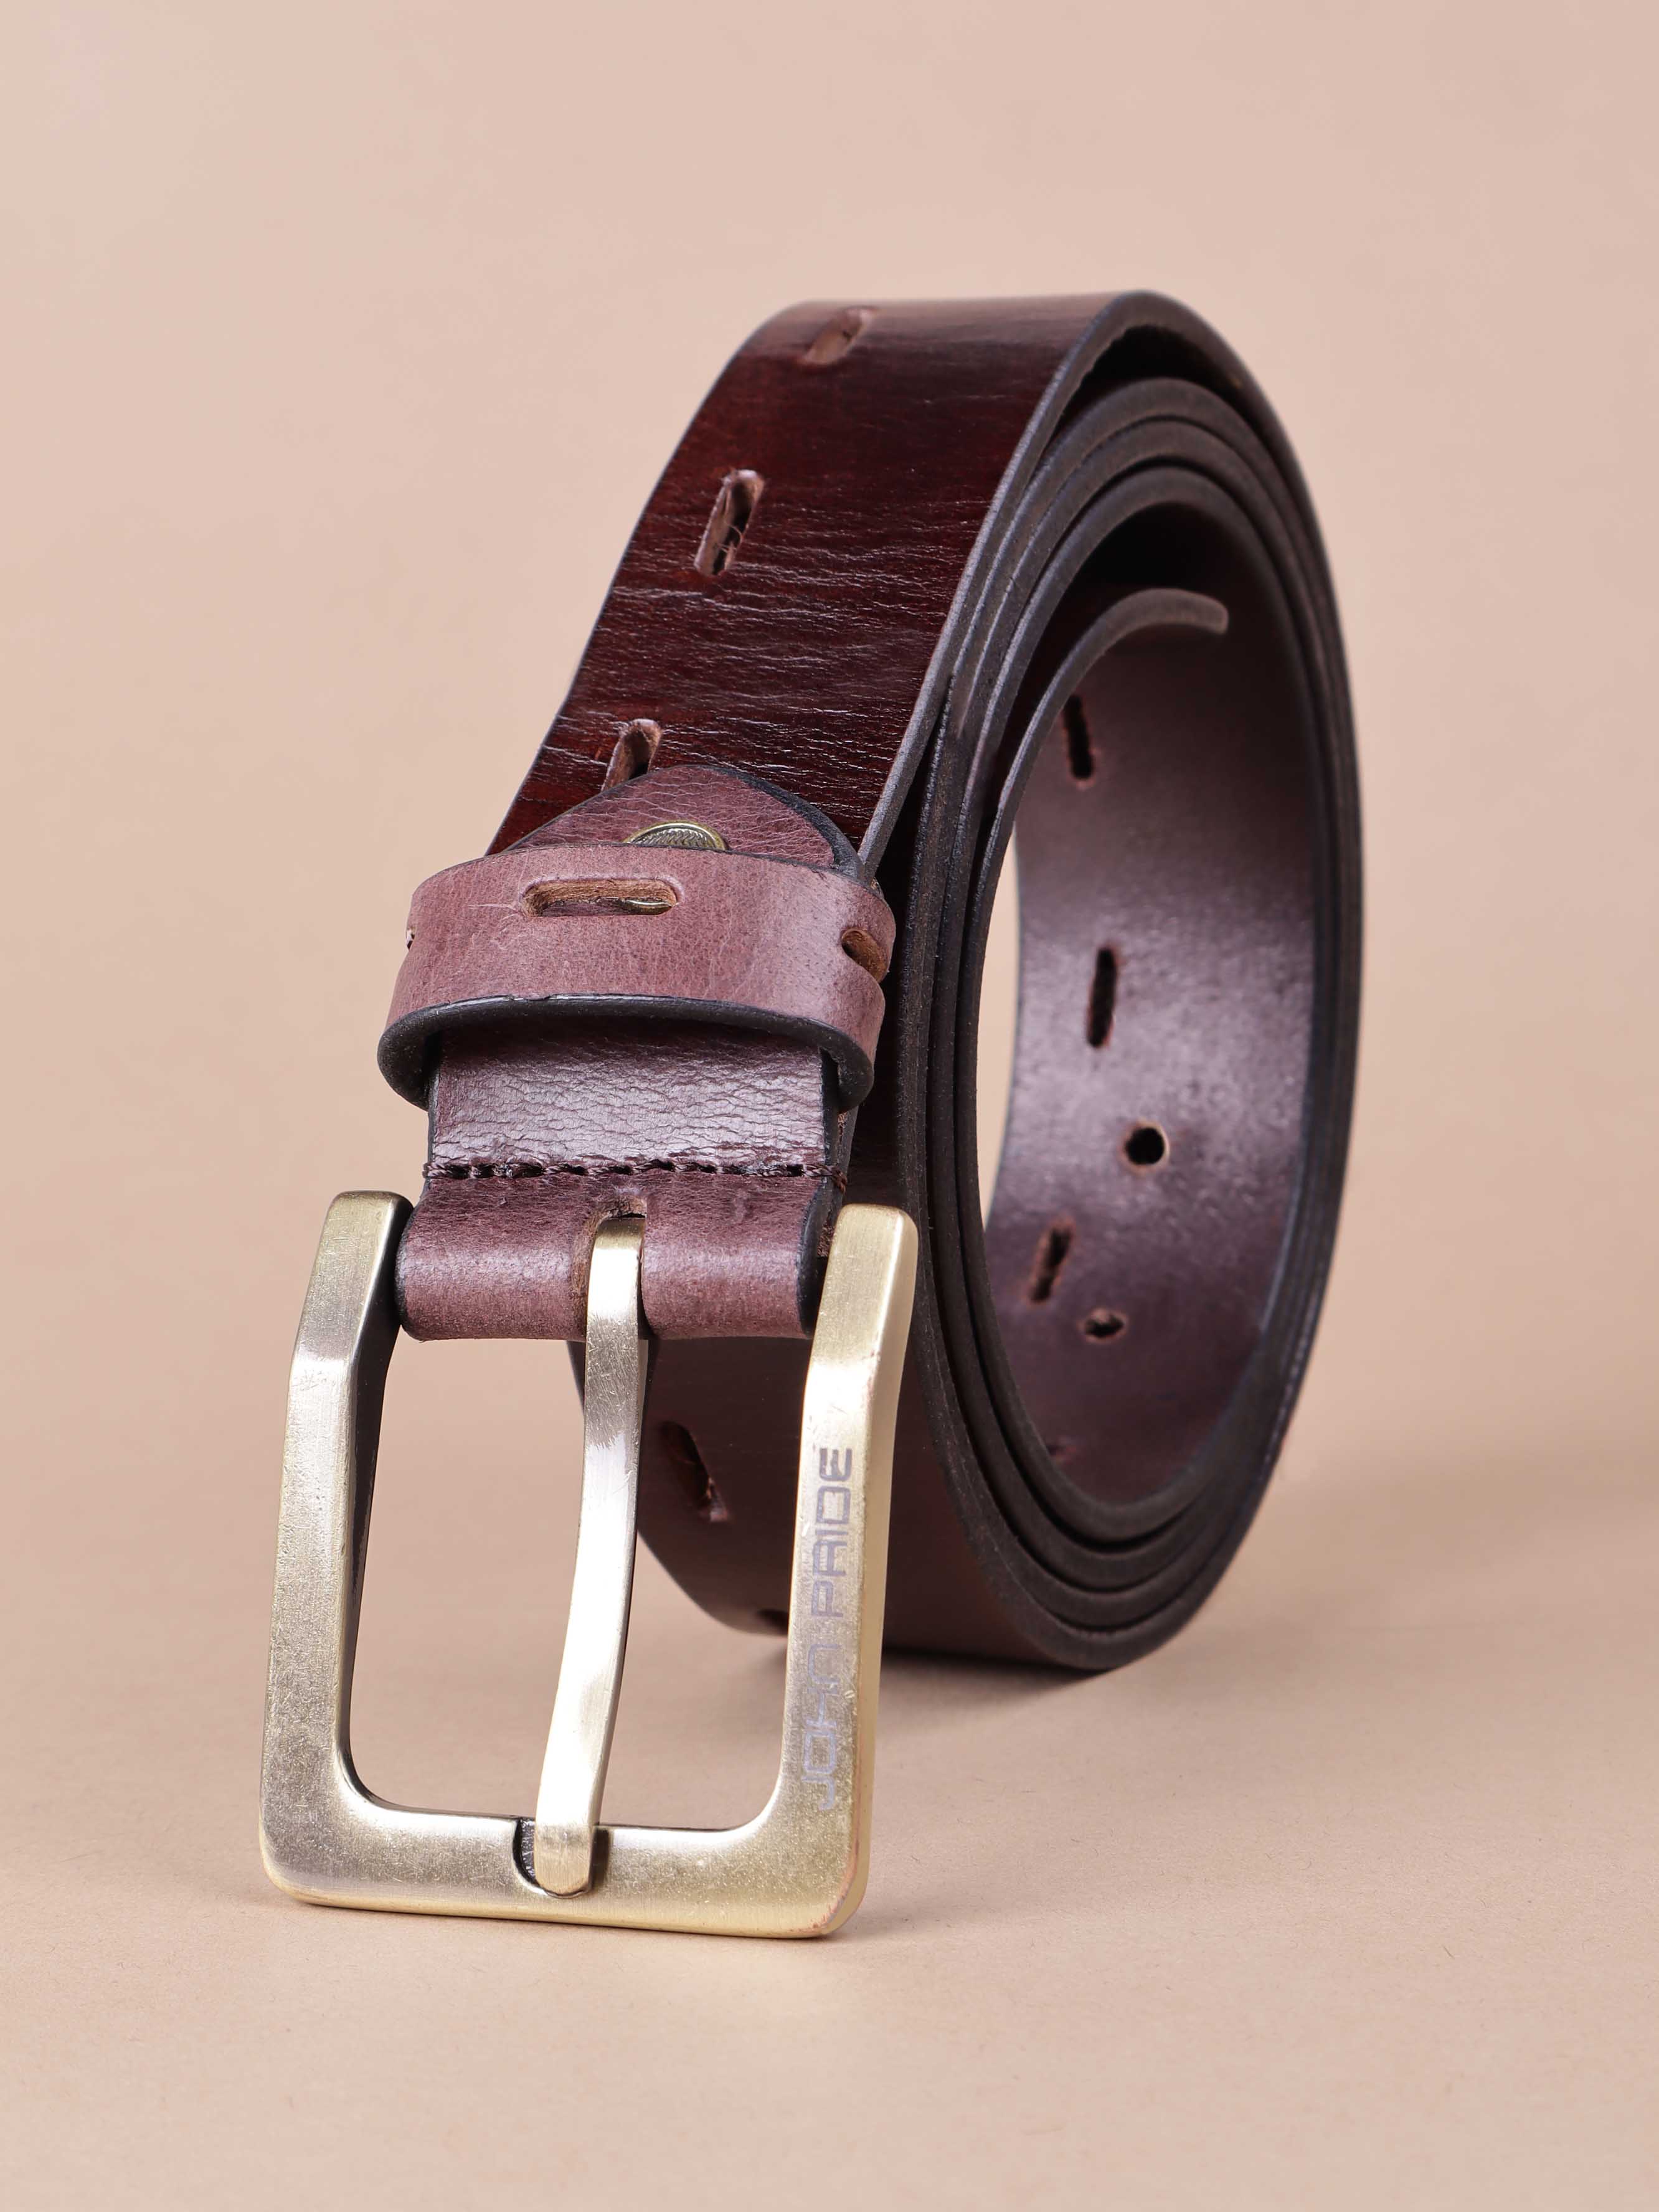 accessories/belts/JPBT1005/jpbt1005-1.jpg